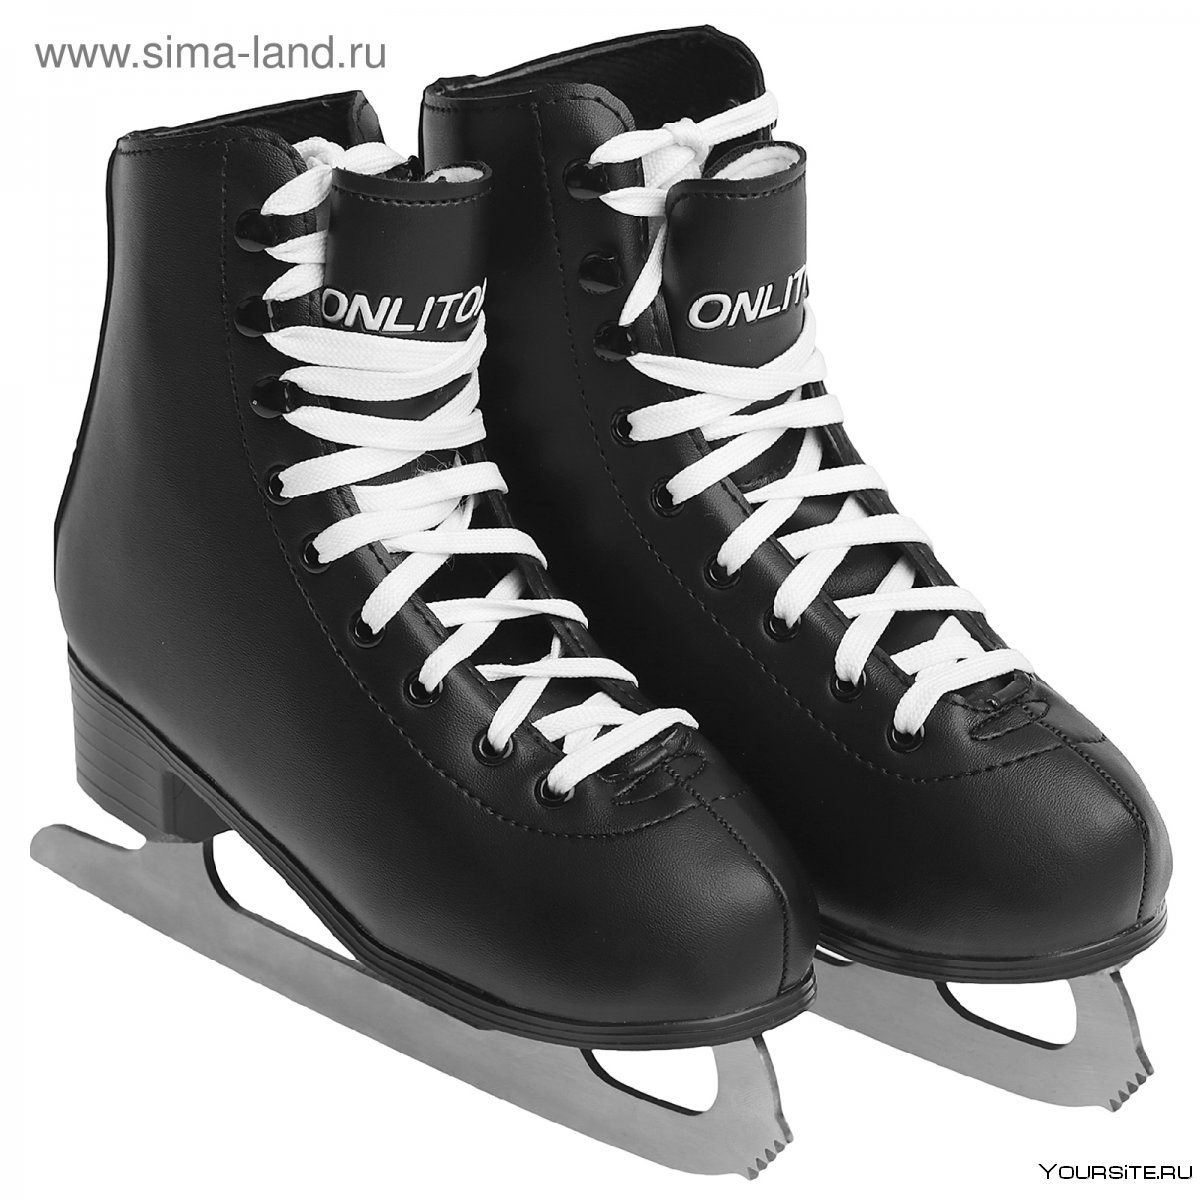 Хоккейные коньки Ice Blade Orion